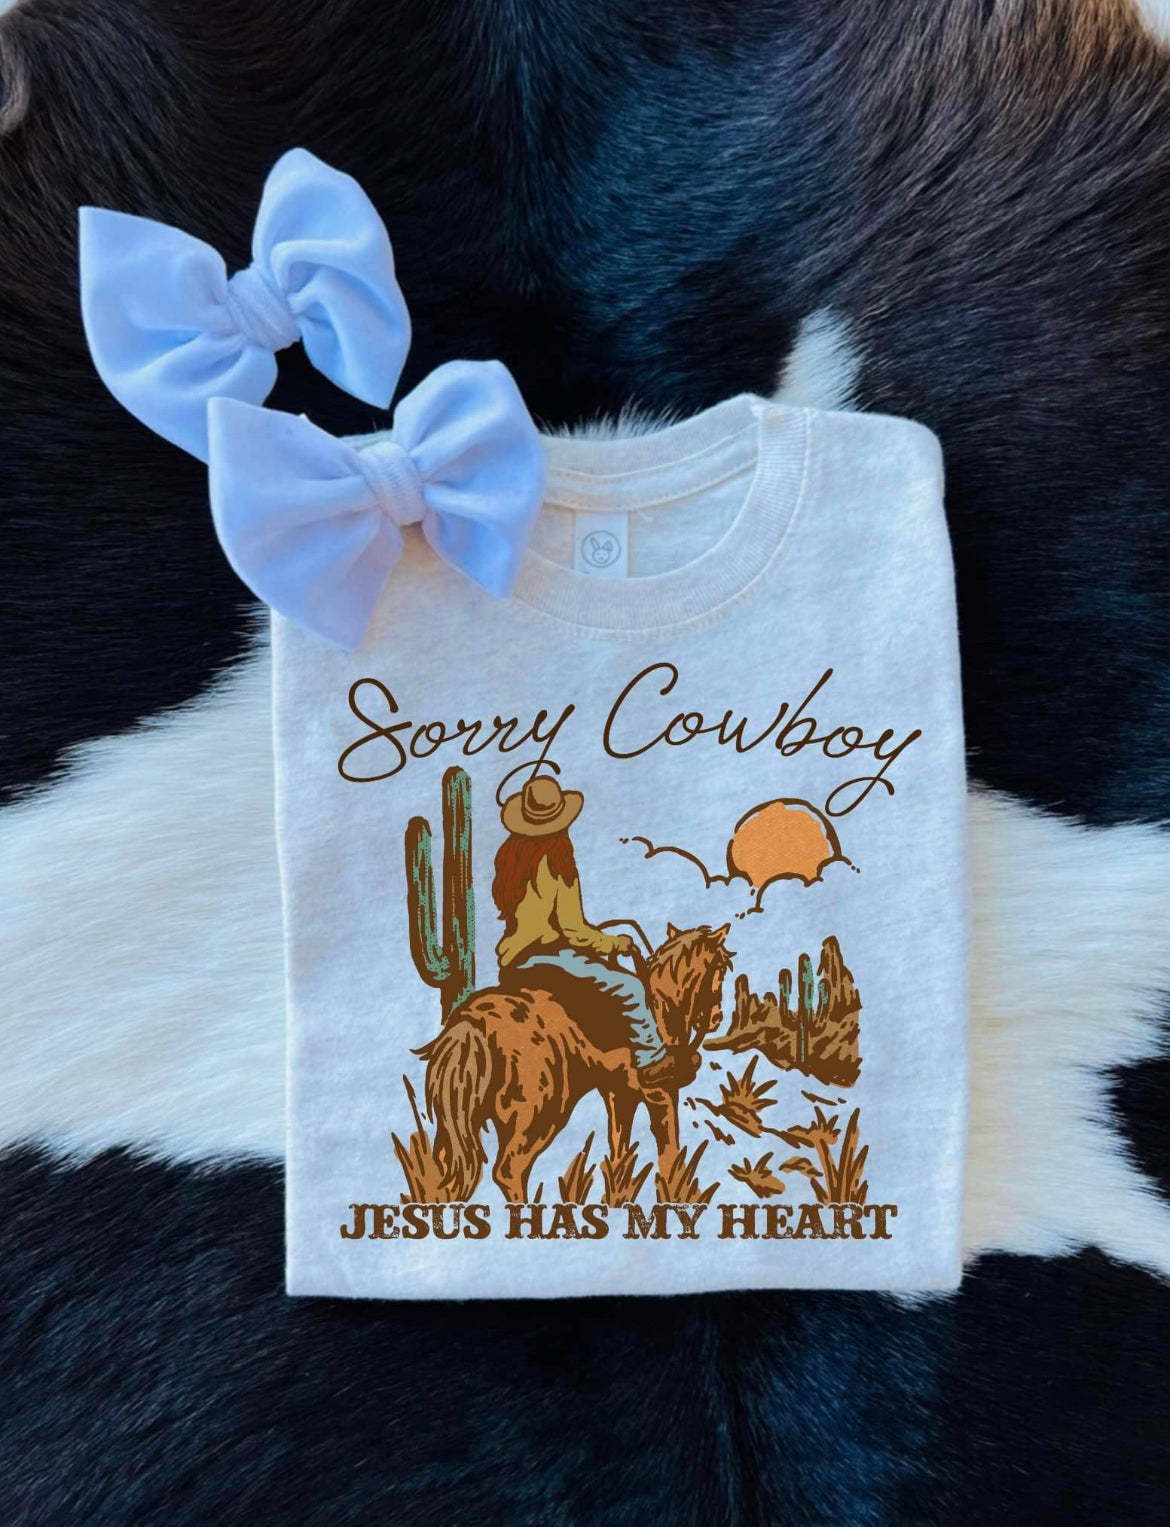 Sorry Cowboy T-shirt